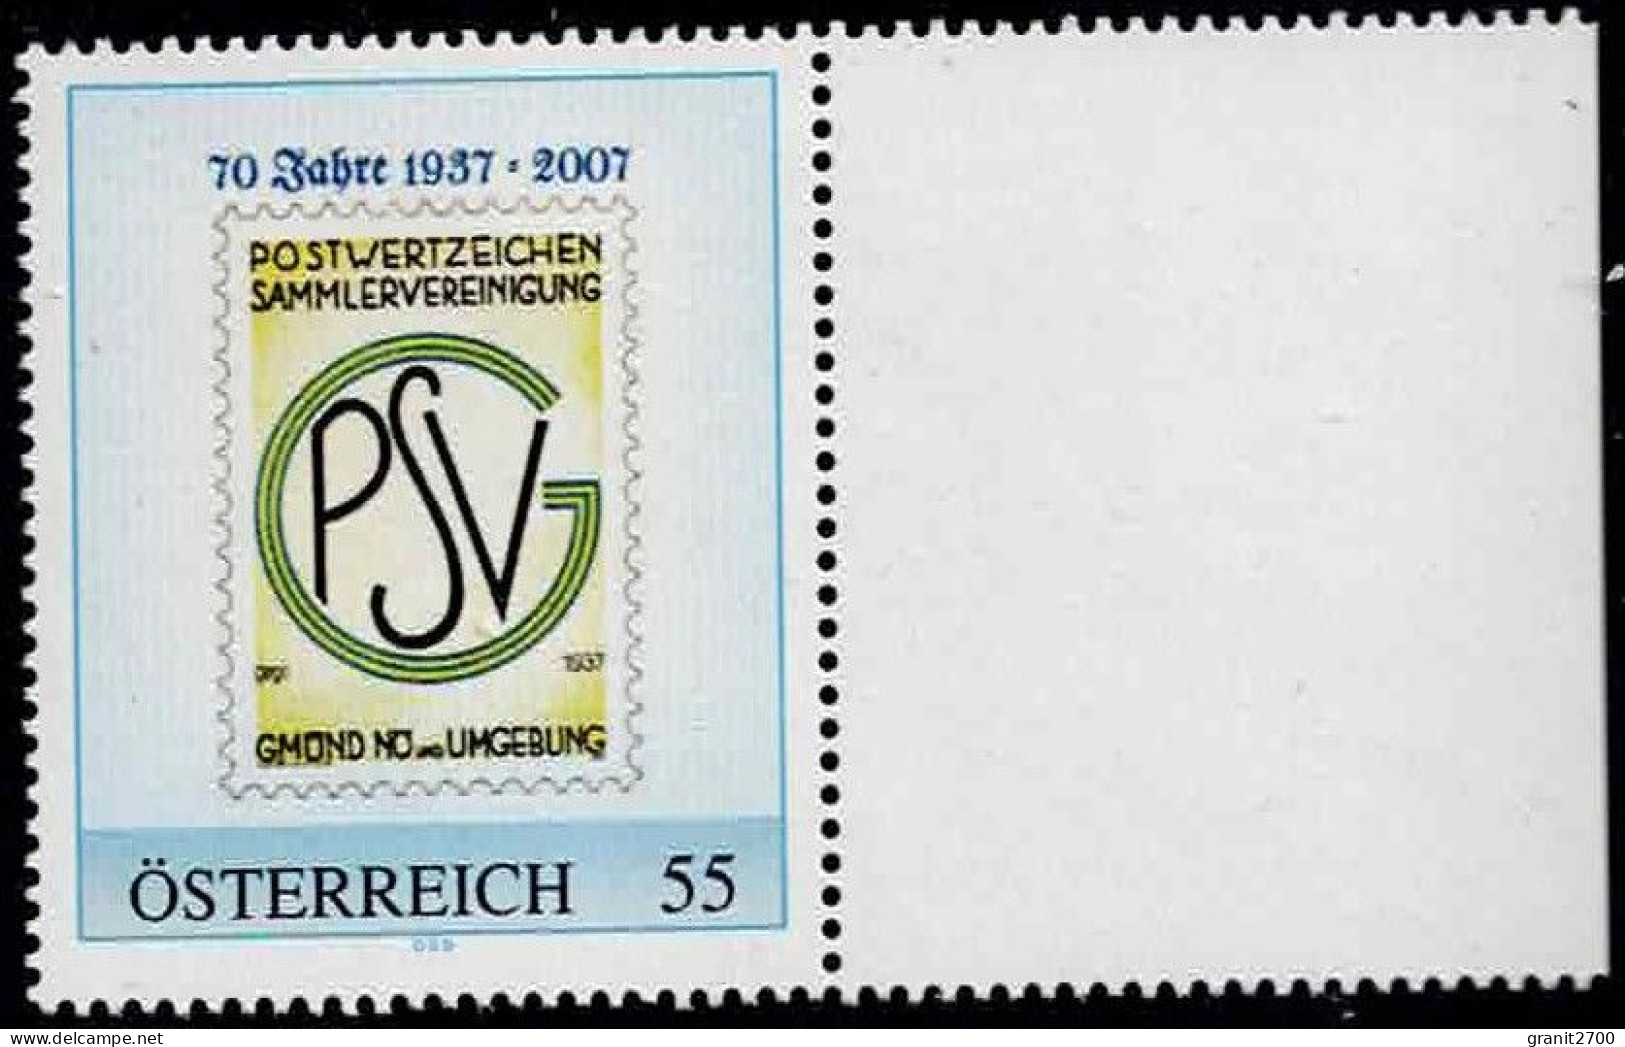 PM  70 Jahre Postwertzeichen Sammlervereinigung Gmünd  Ex Bogen Nr. 8015111  Postfrisch - Timbres Personnalisés